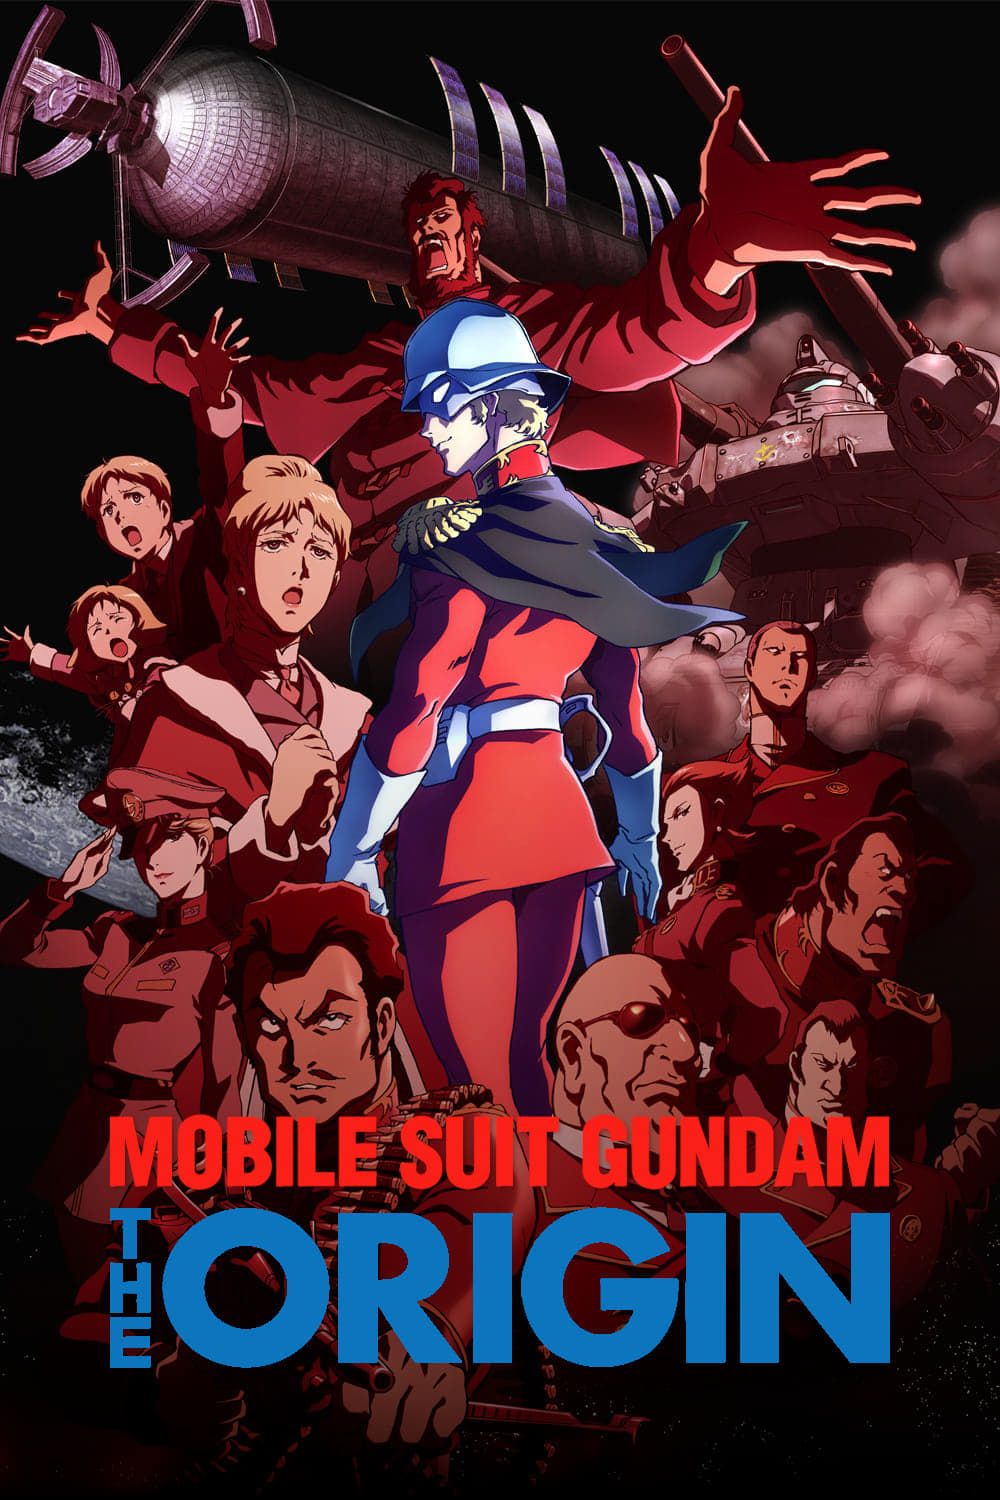 Mobile Suit Gundam: The Origin